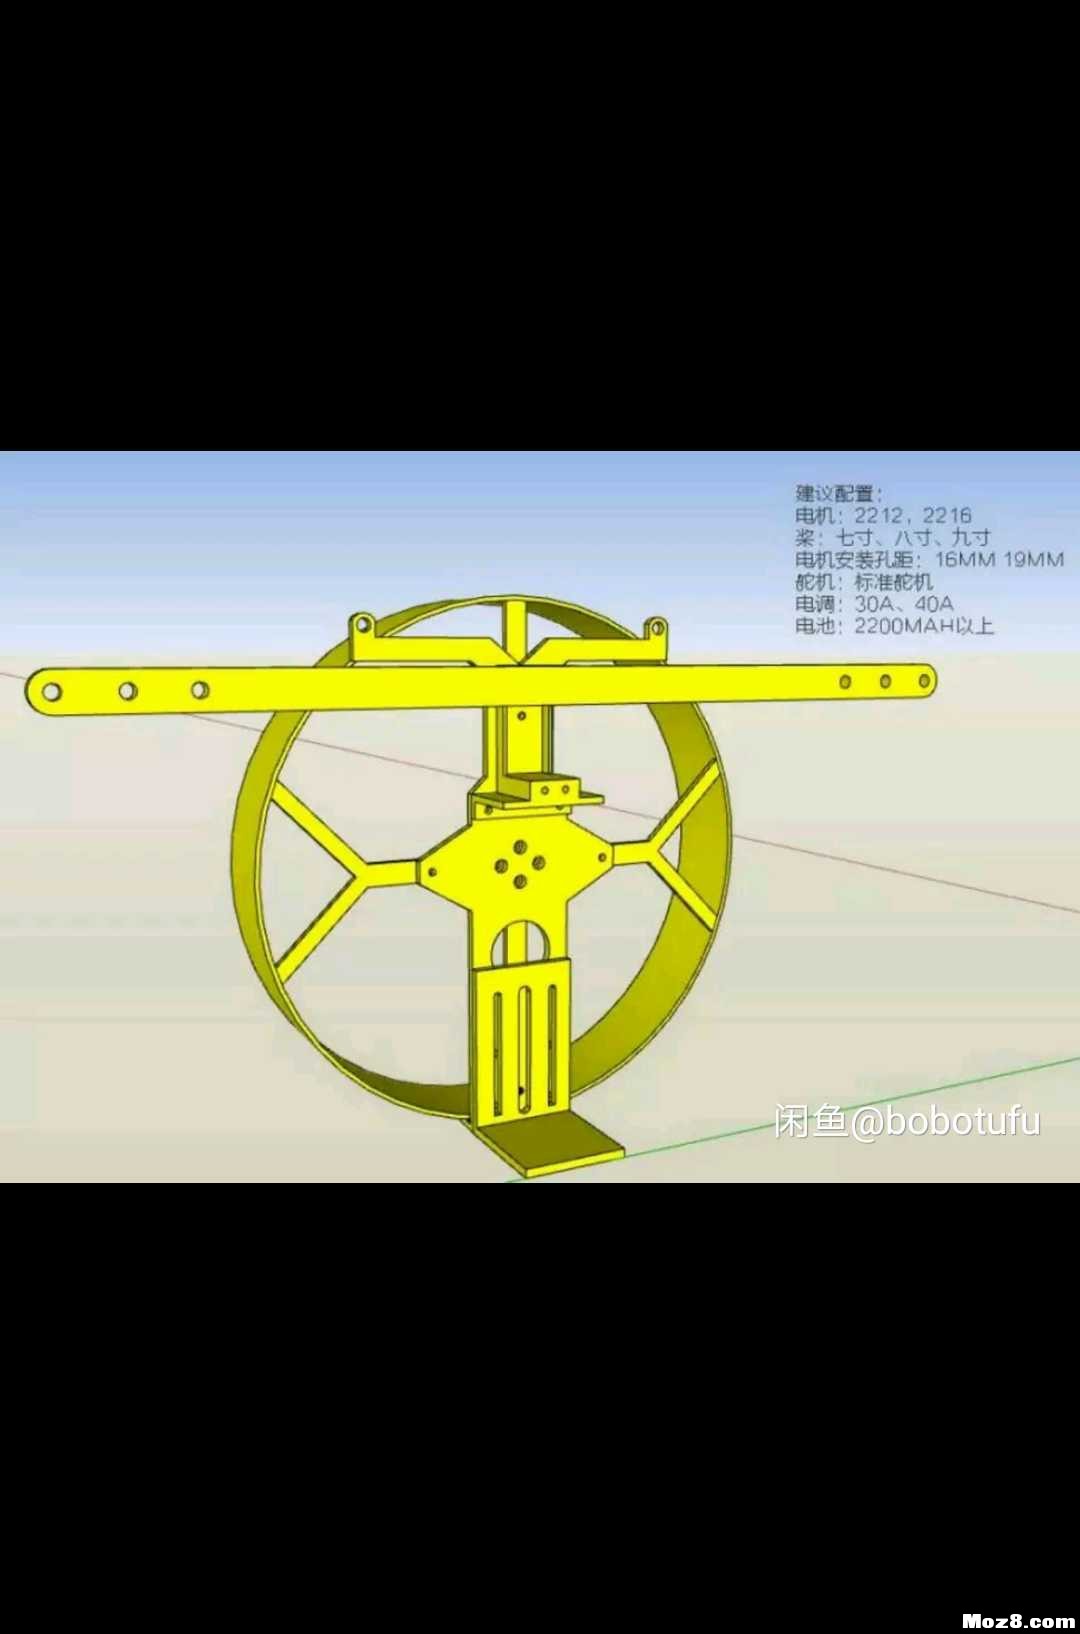 遥控动力伞 3D机架重画 模型,固定翼,舵机,电调,电机 作者:bobotufu 8560 